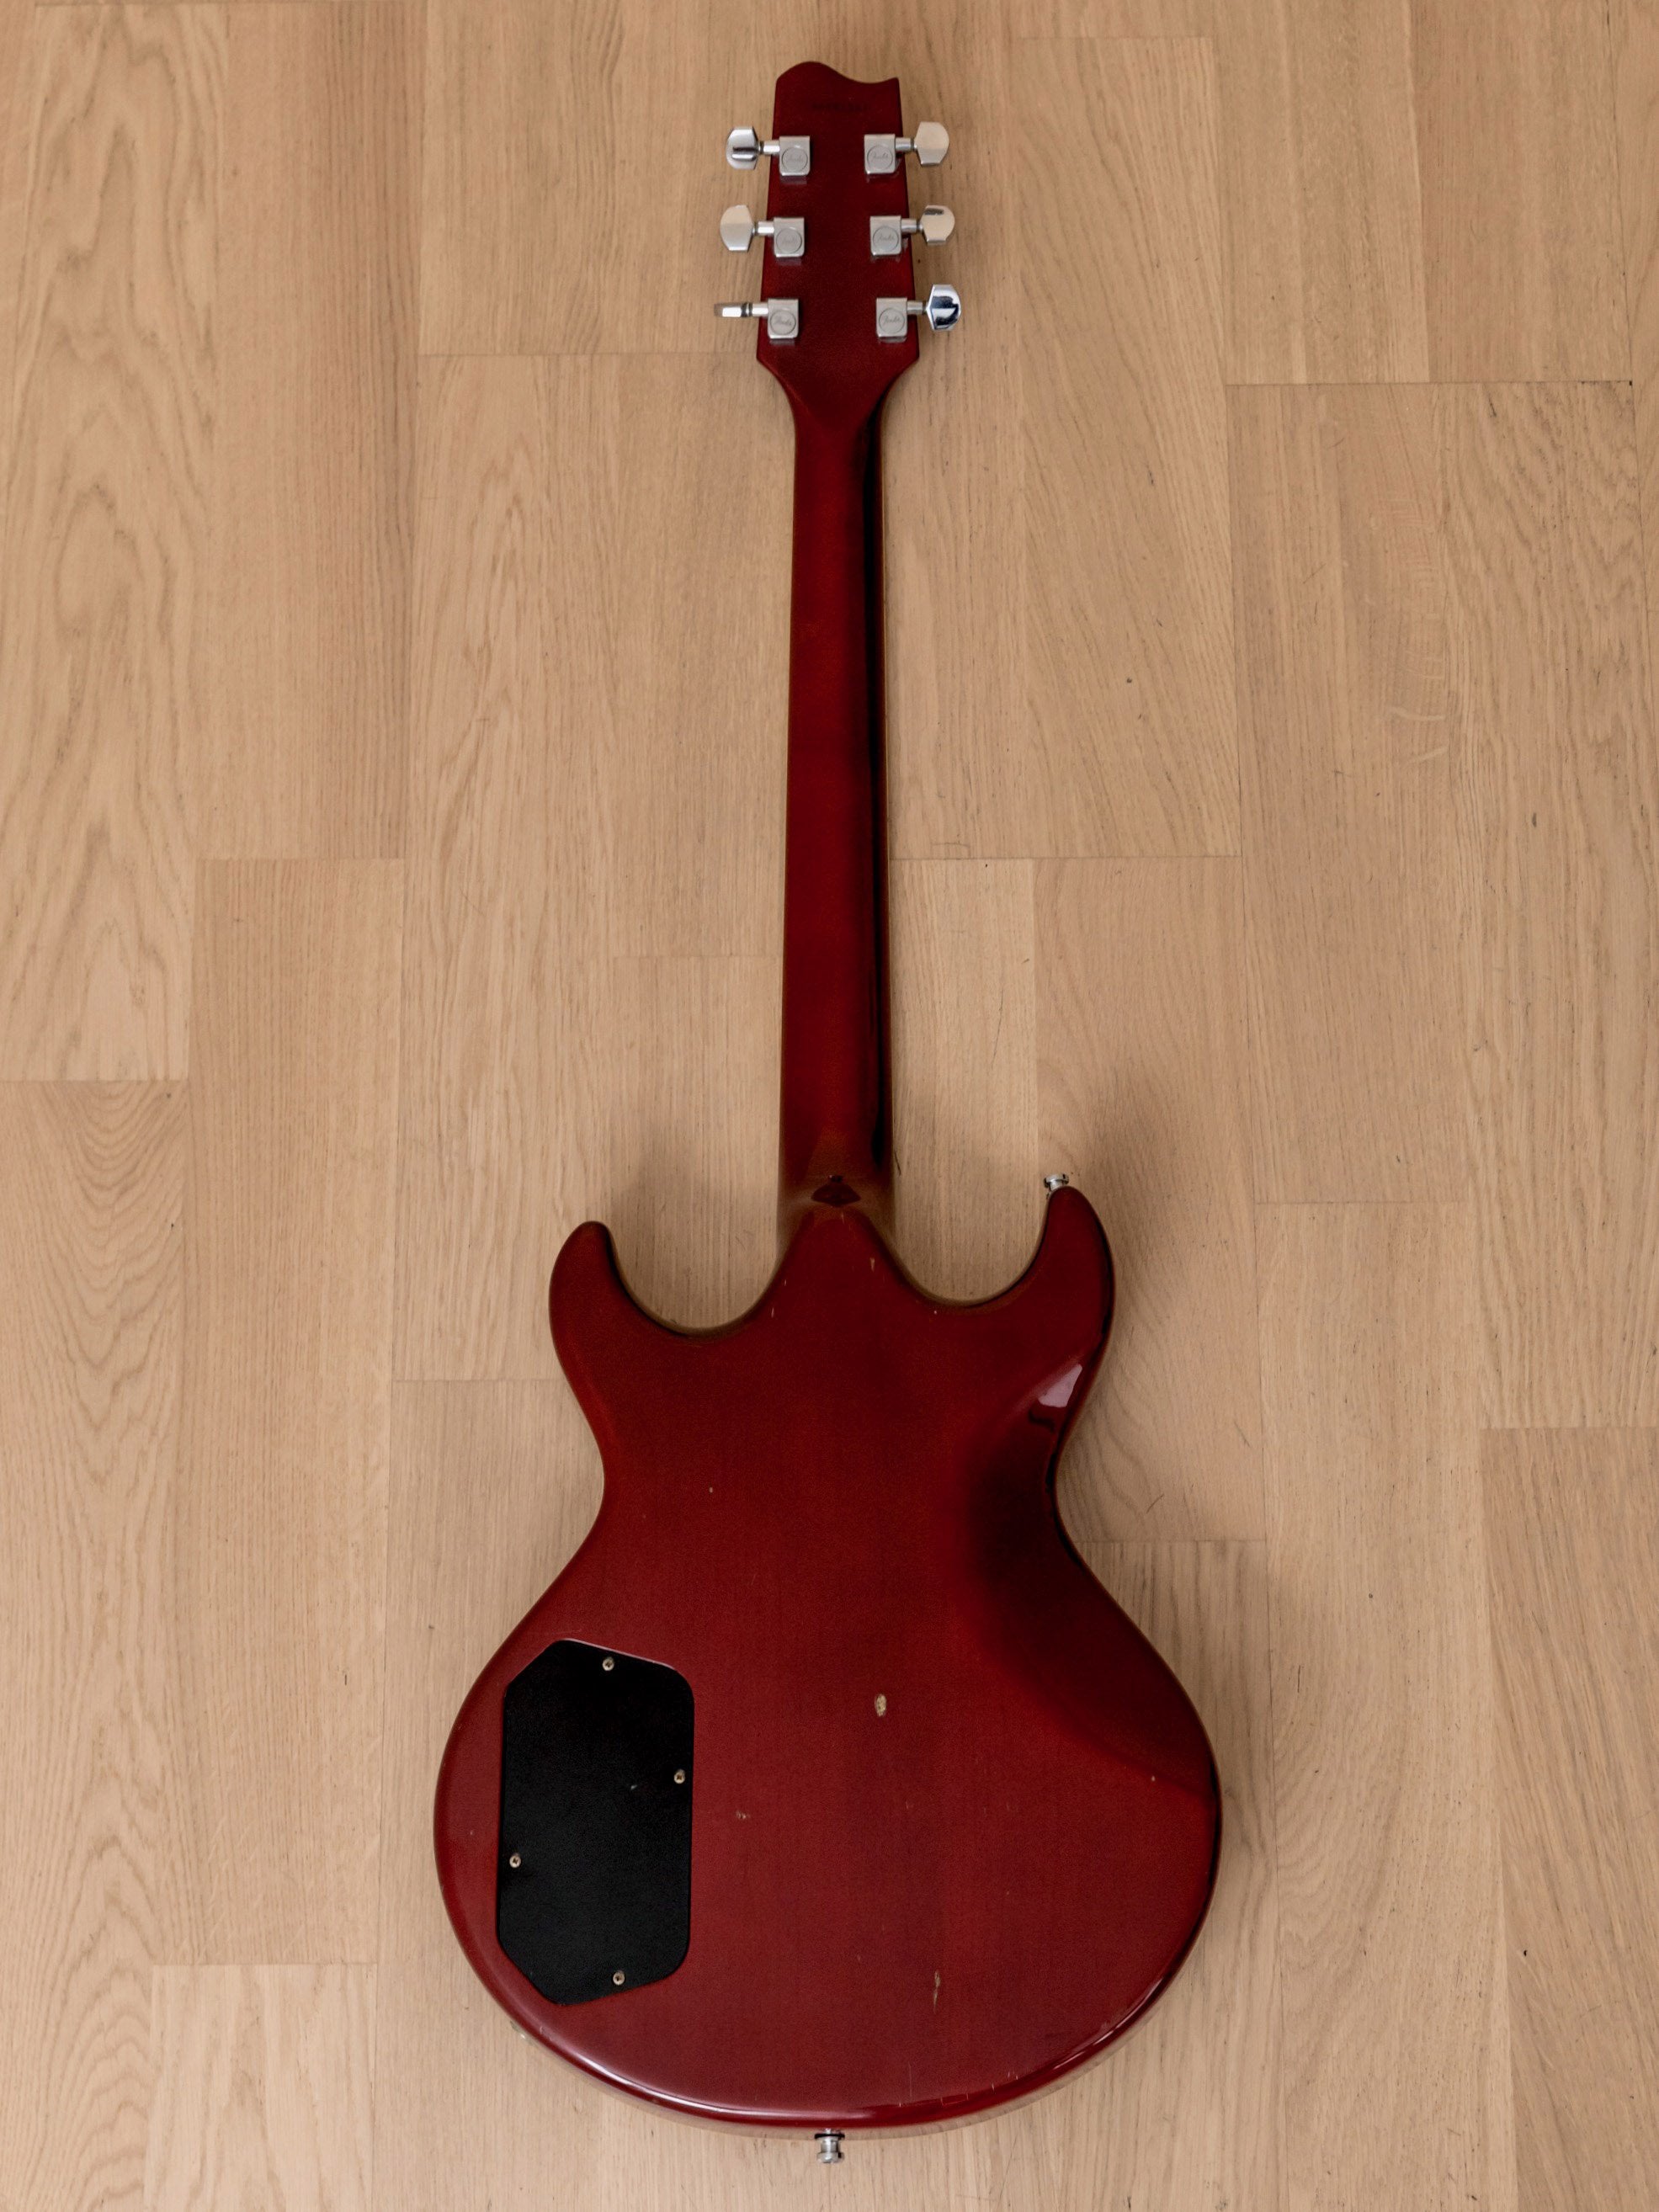 1984 Fender Master Series Flame Standard Vintage Set-Neck Guitar, Dan Smith-designed, Japan MIJ